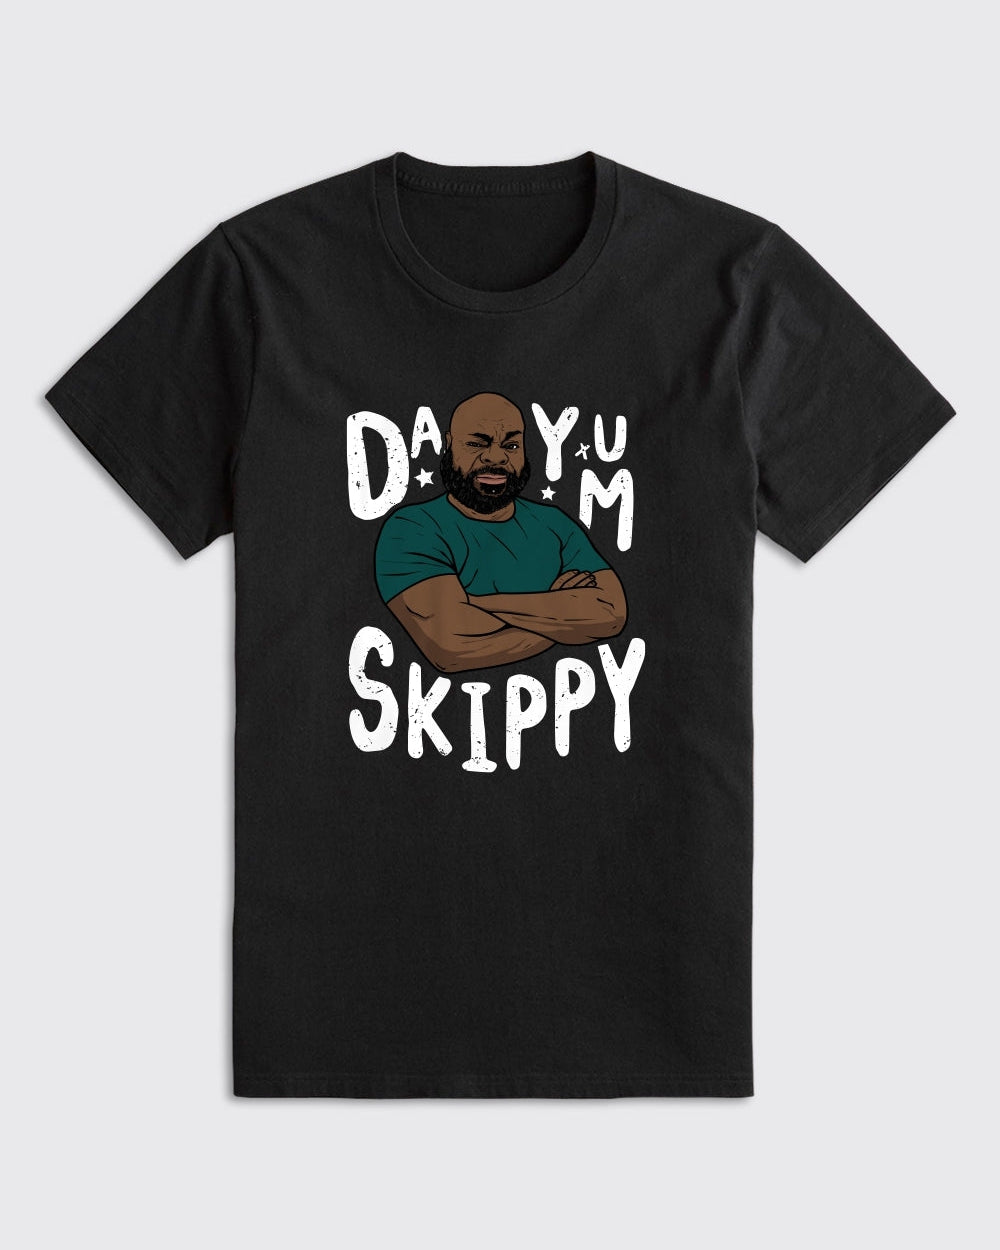 Hollis Thomas Dayum Skippy Shirt